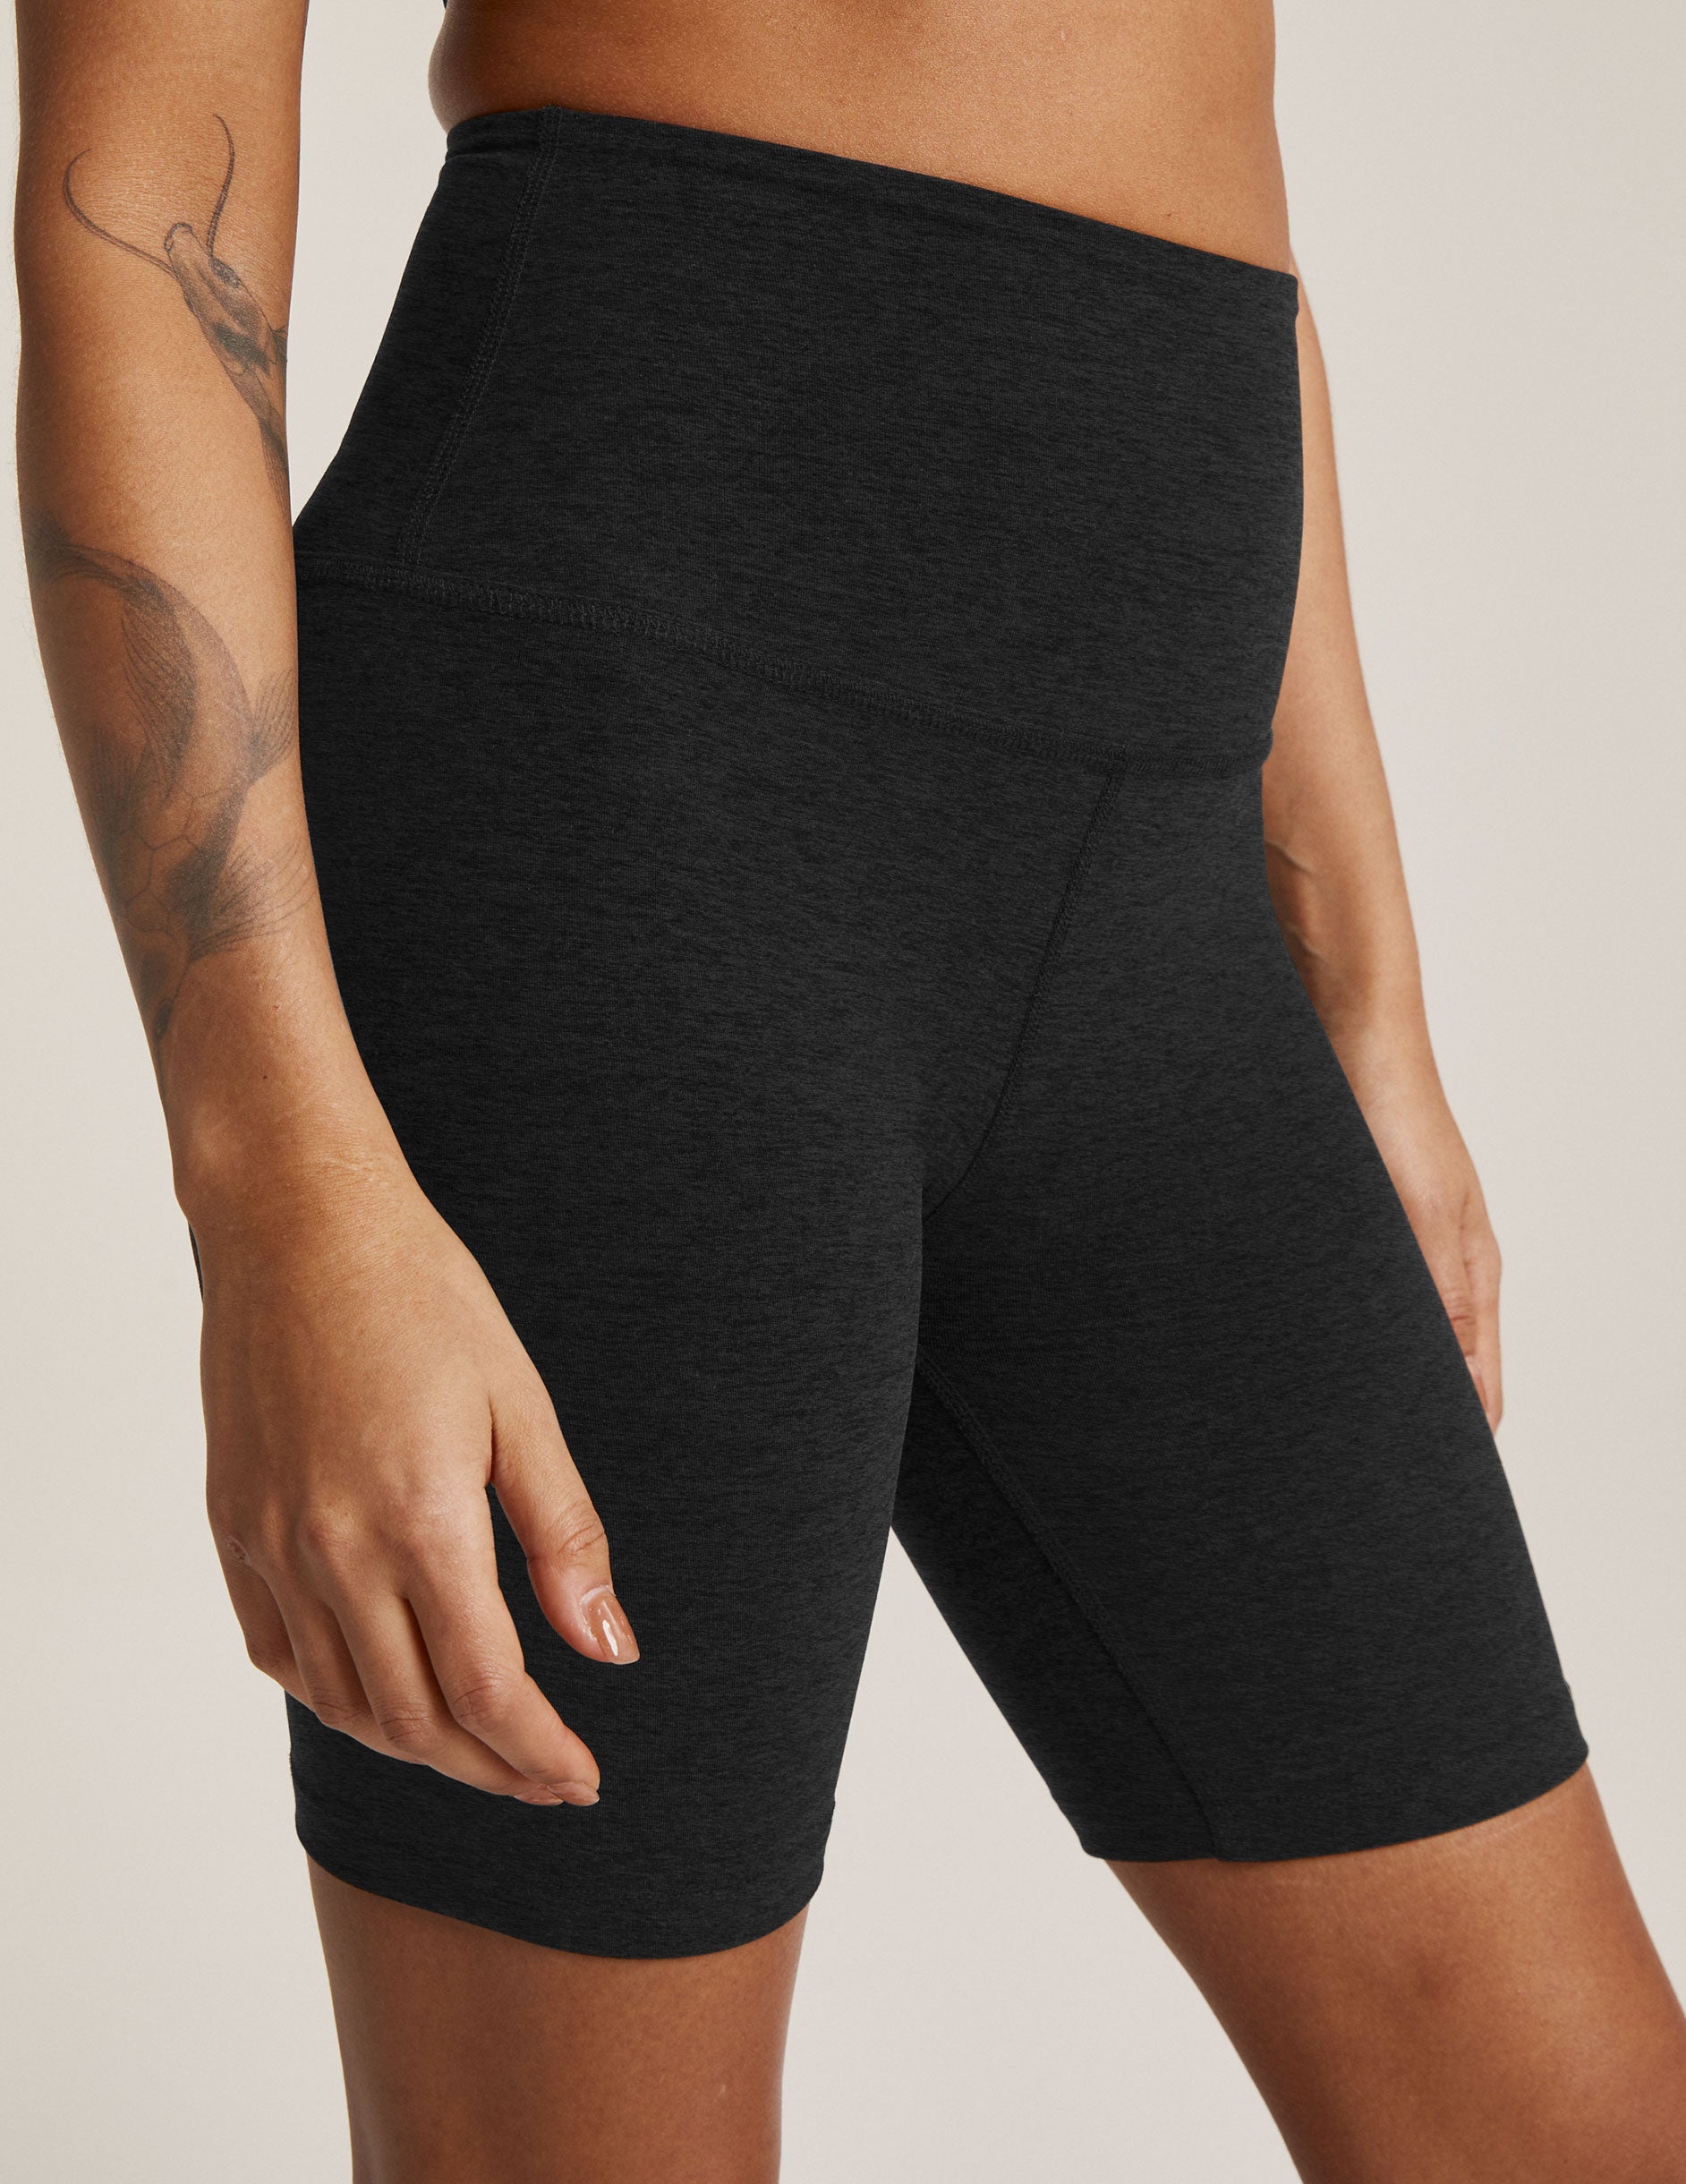 Softlyzero™ High Waisted Crossover Side Pocket Yoga Plus Size Biker Shorts  7